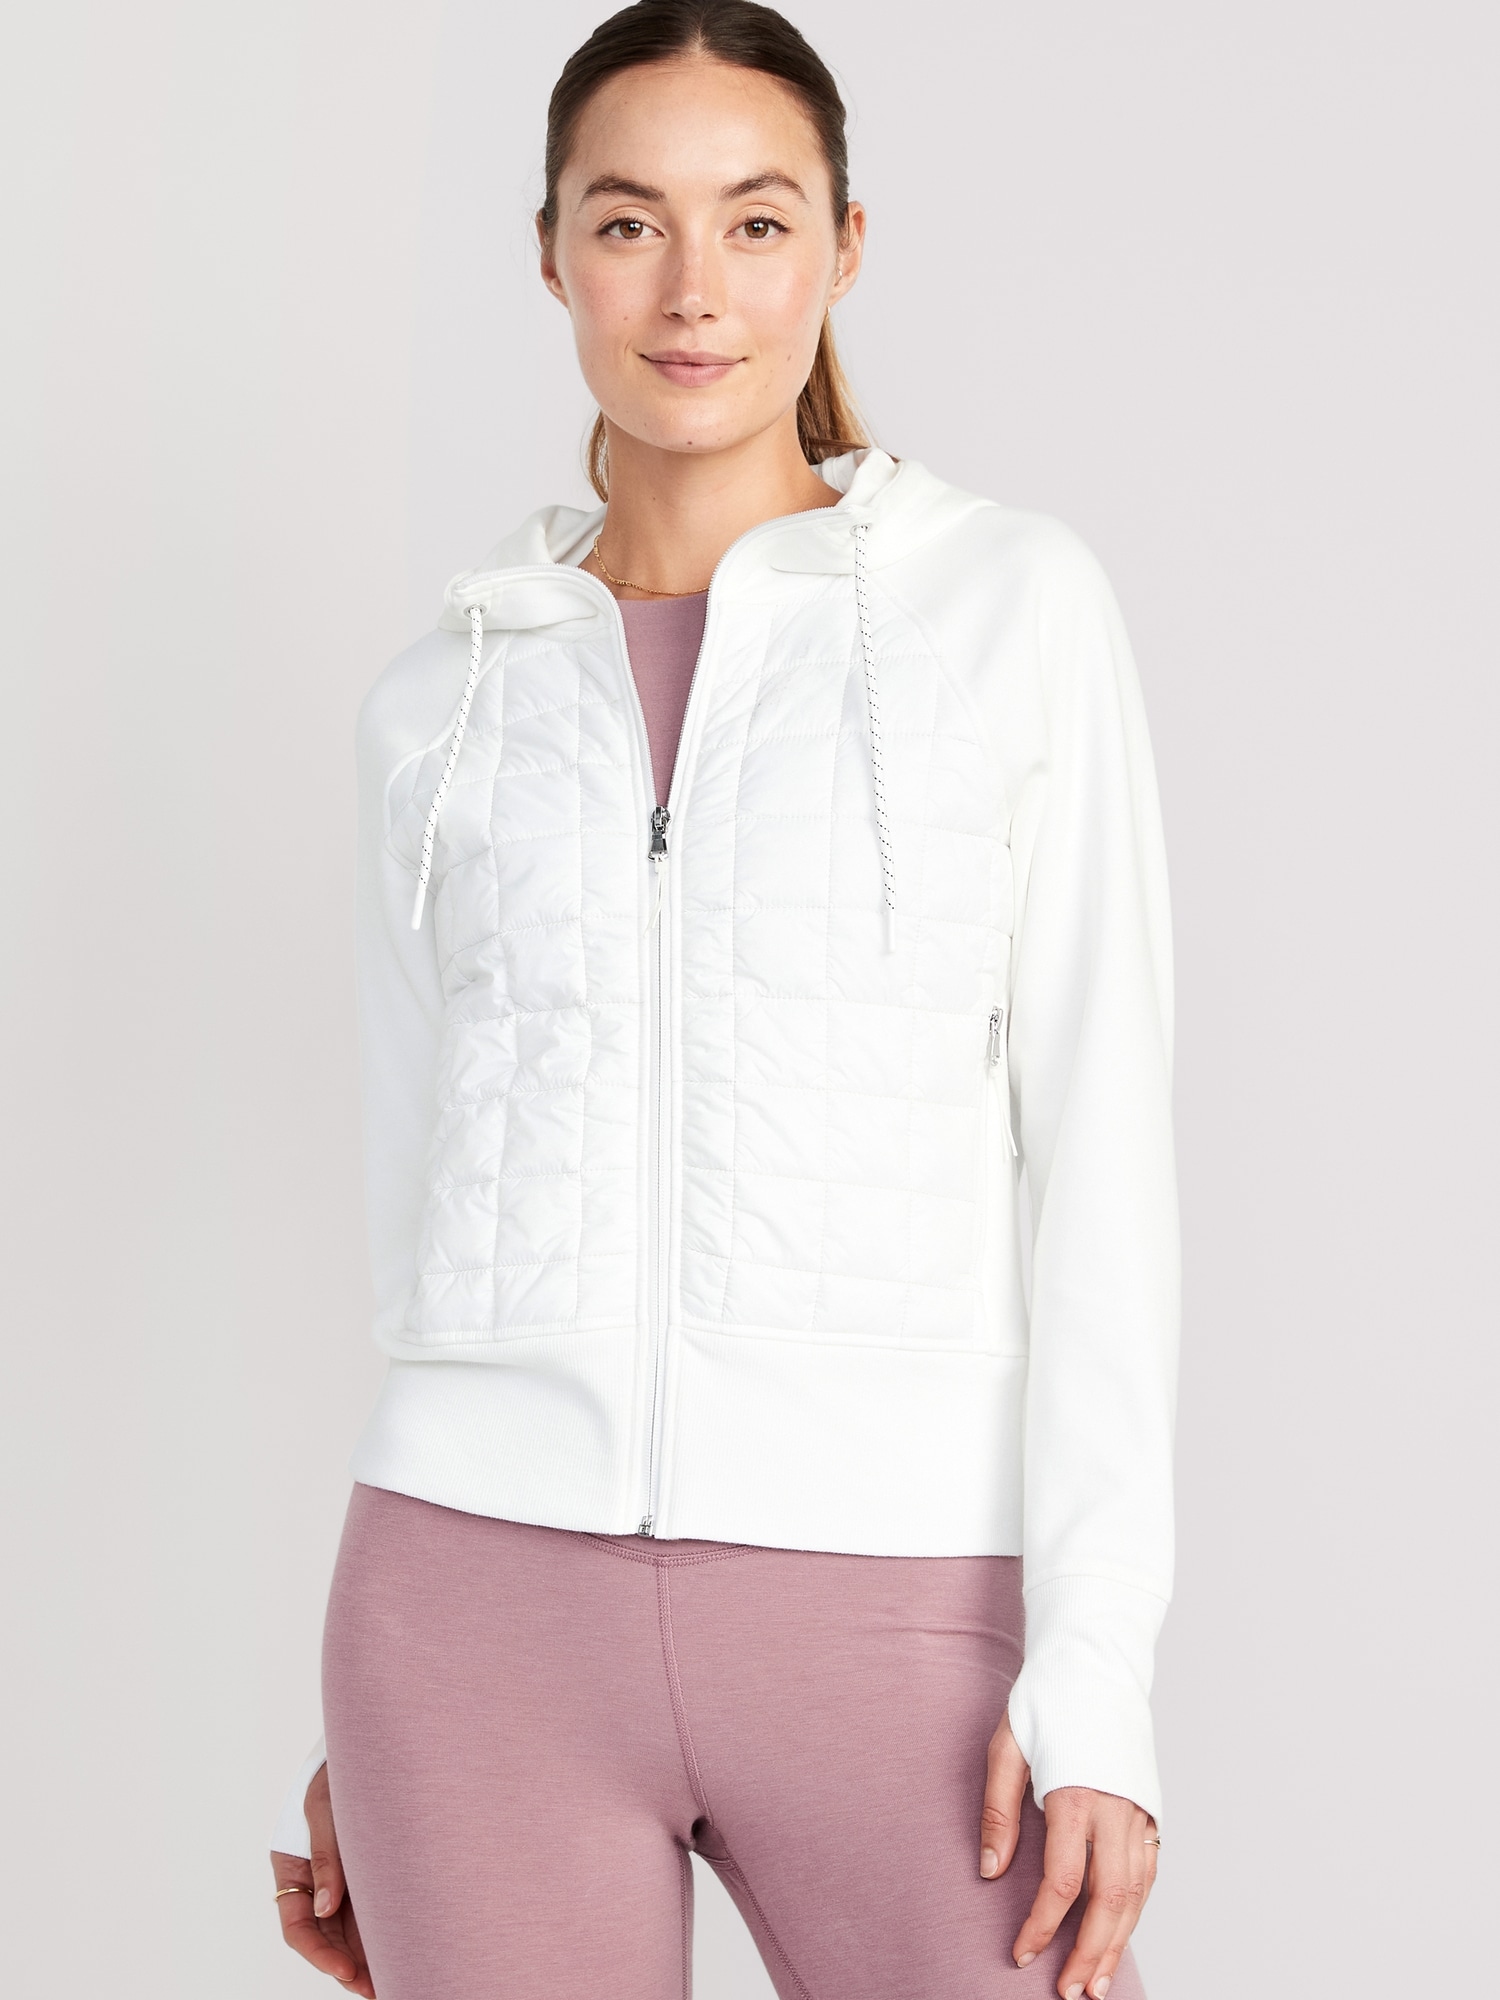 All-Seasons Dynamic Fleece Cropped Hooded Jacket for Women